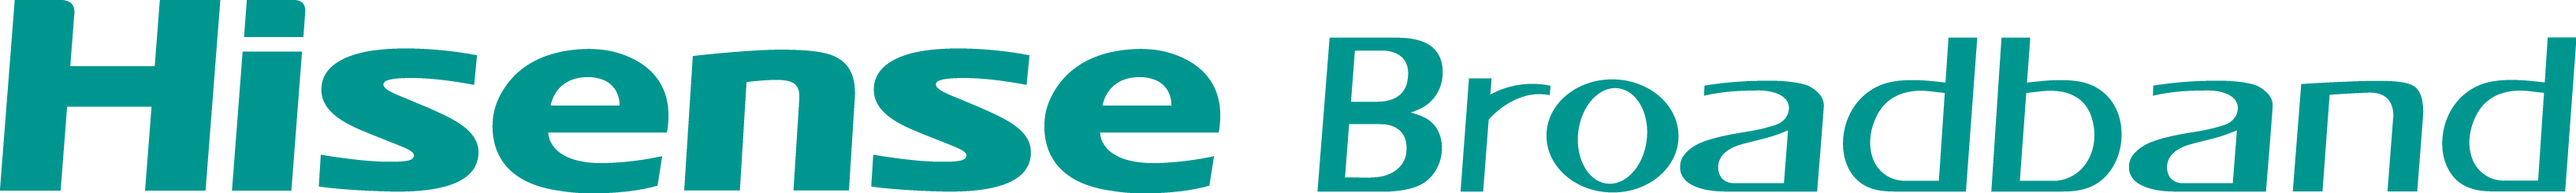 Hisense logo.png